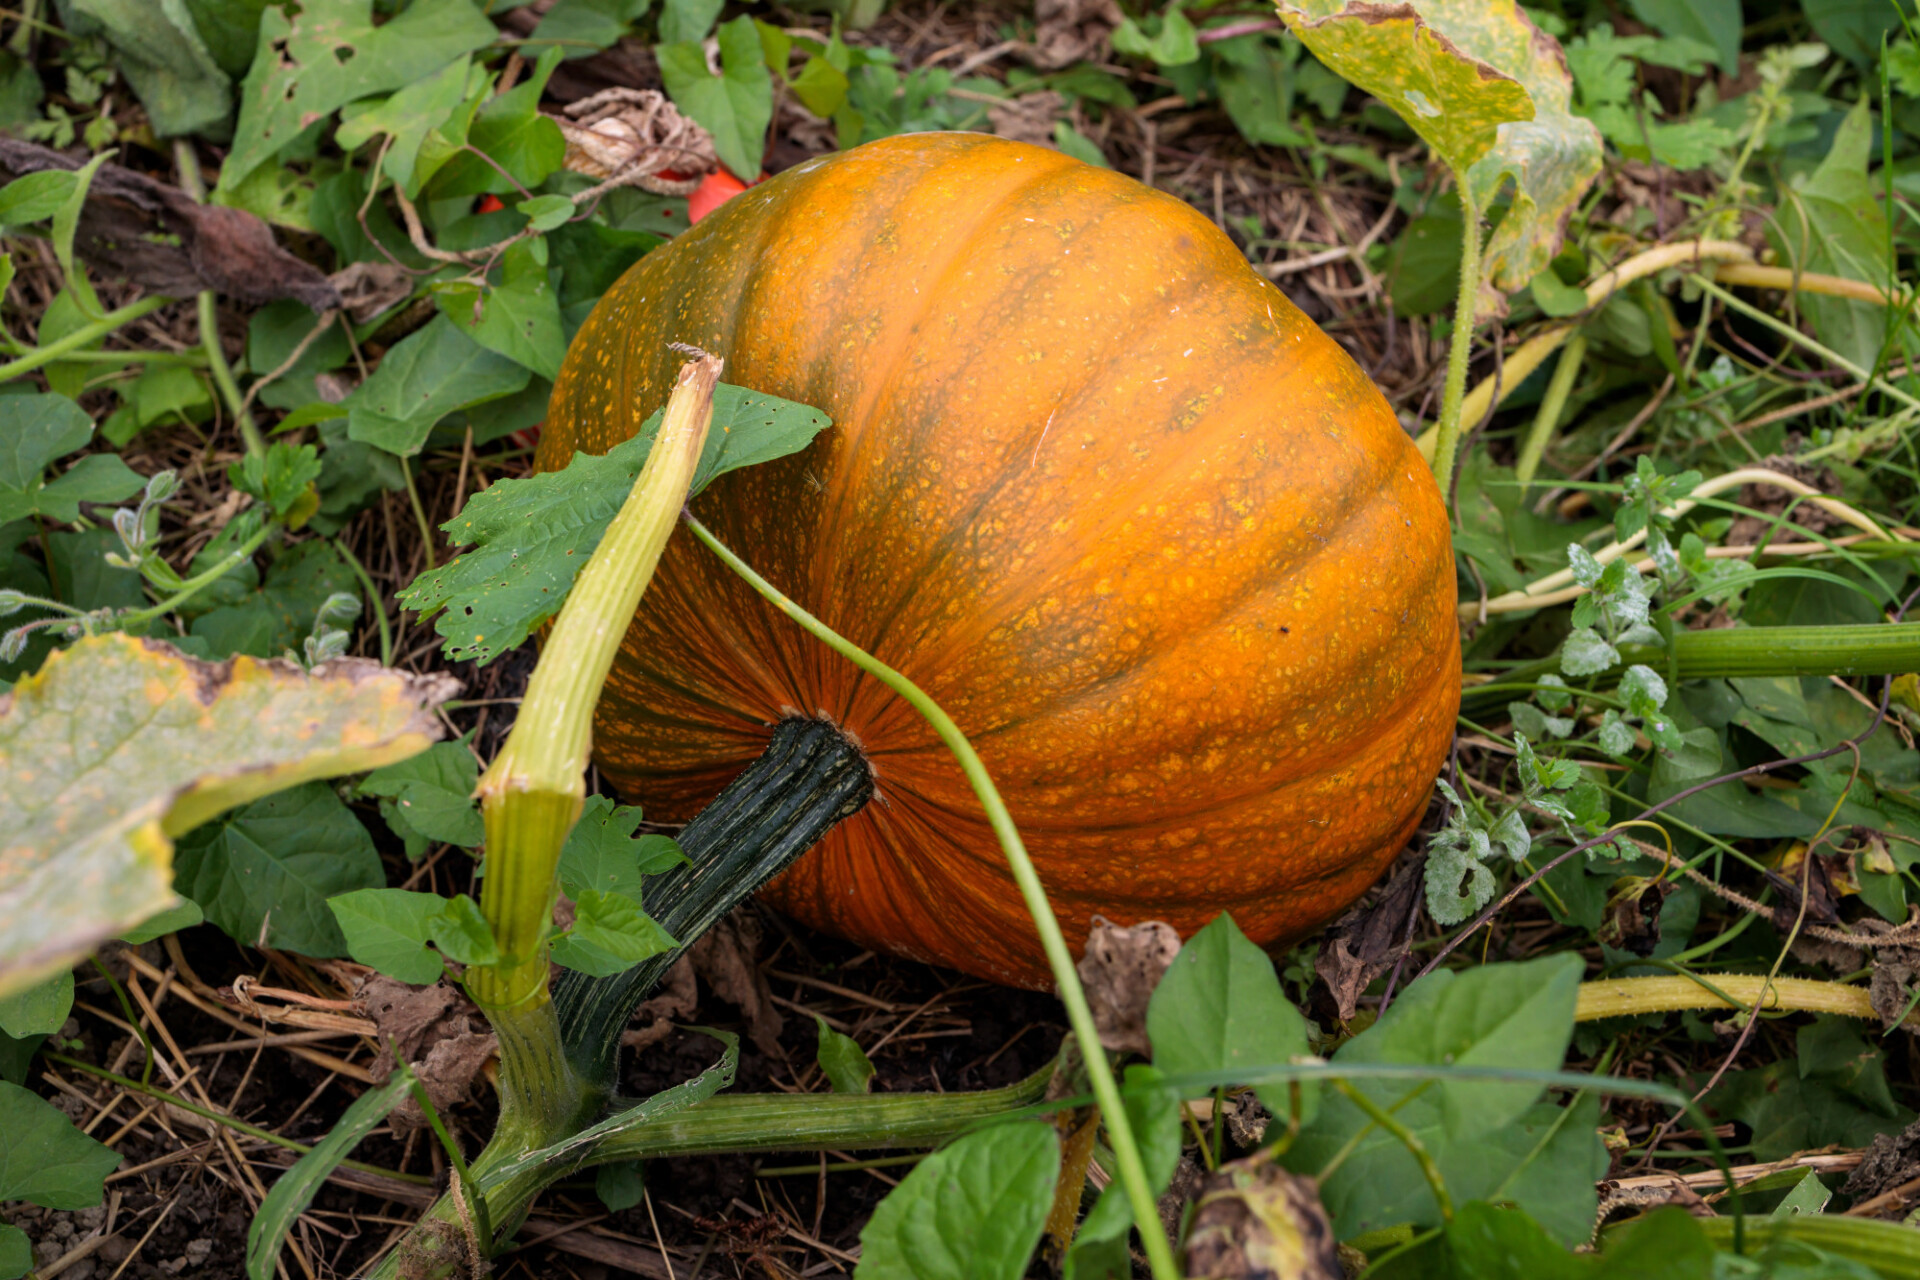 Growing pumpkin